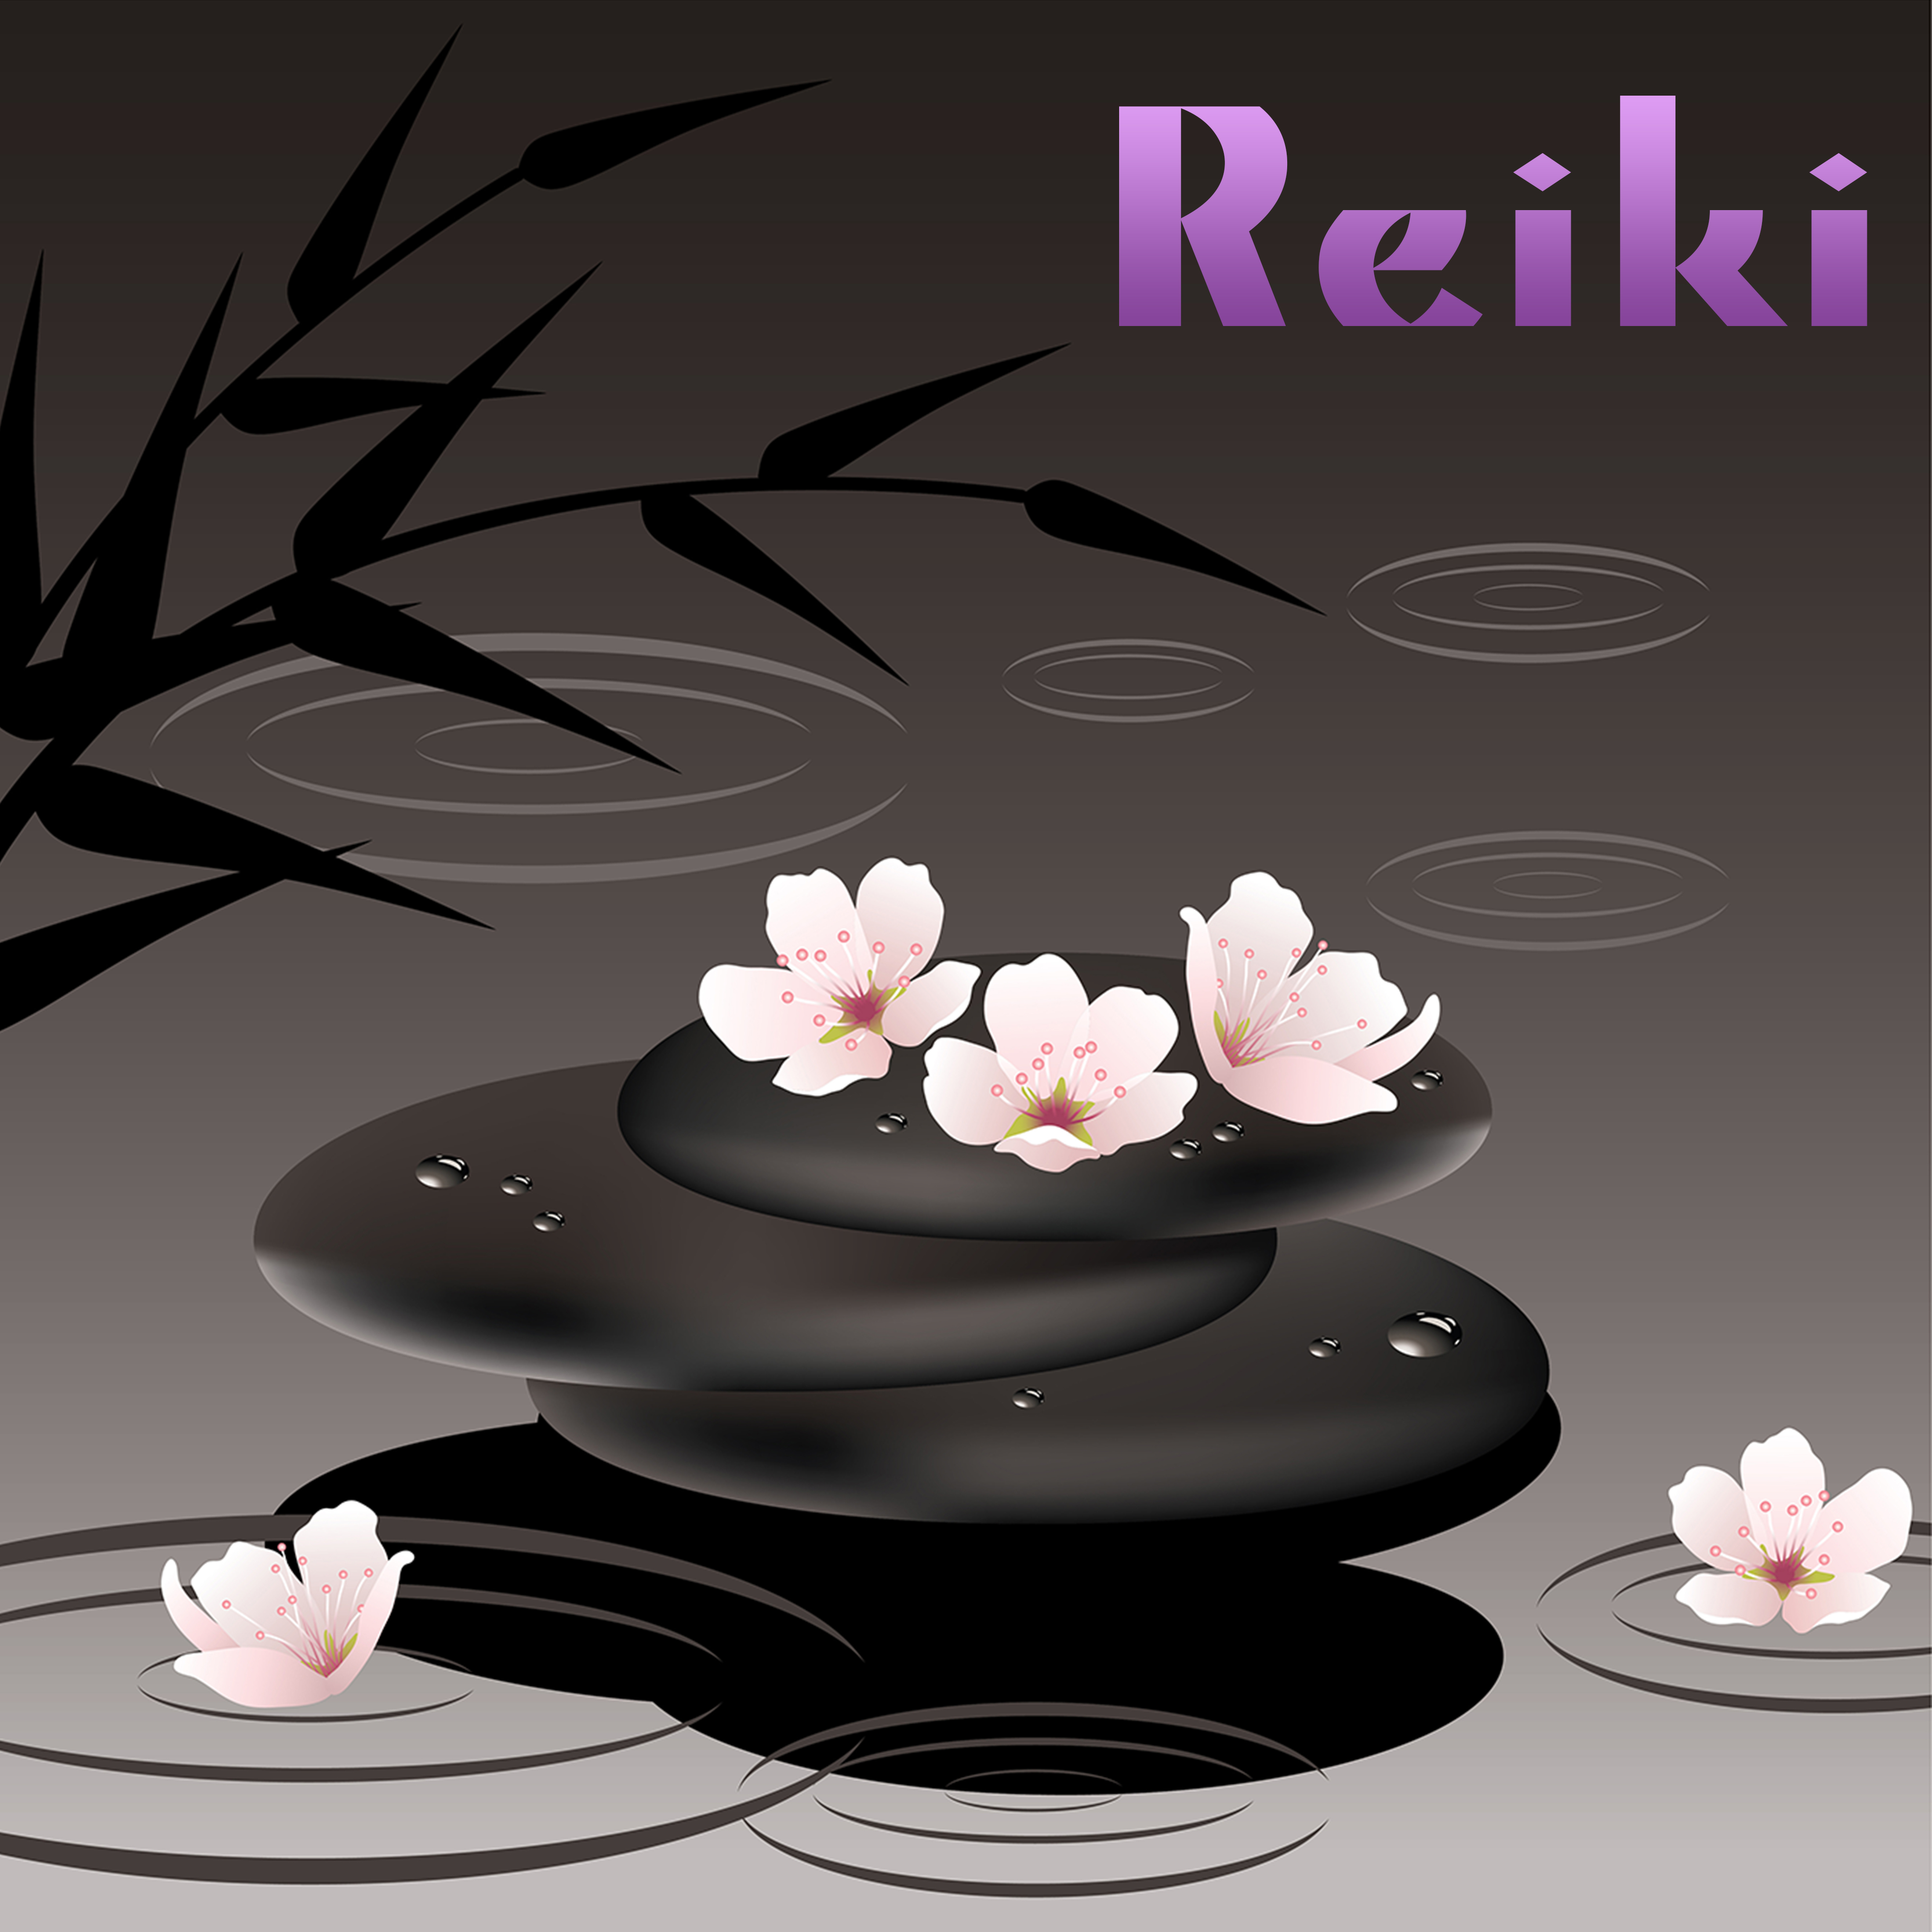 Reiki – Musique zen et relaxante pour détente, yoga, méditation, massage shiatsu et sophrologie